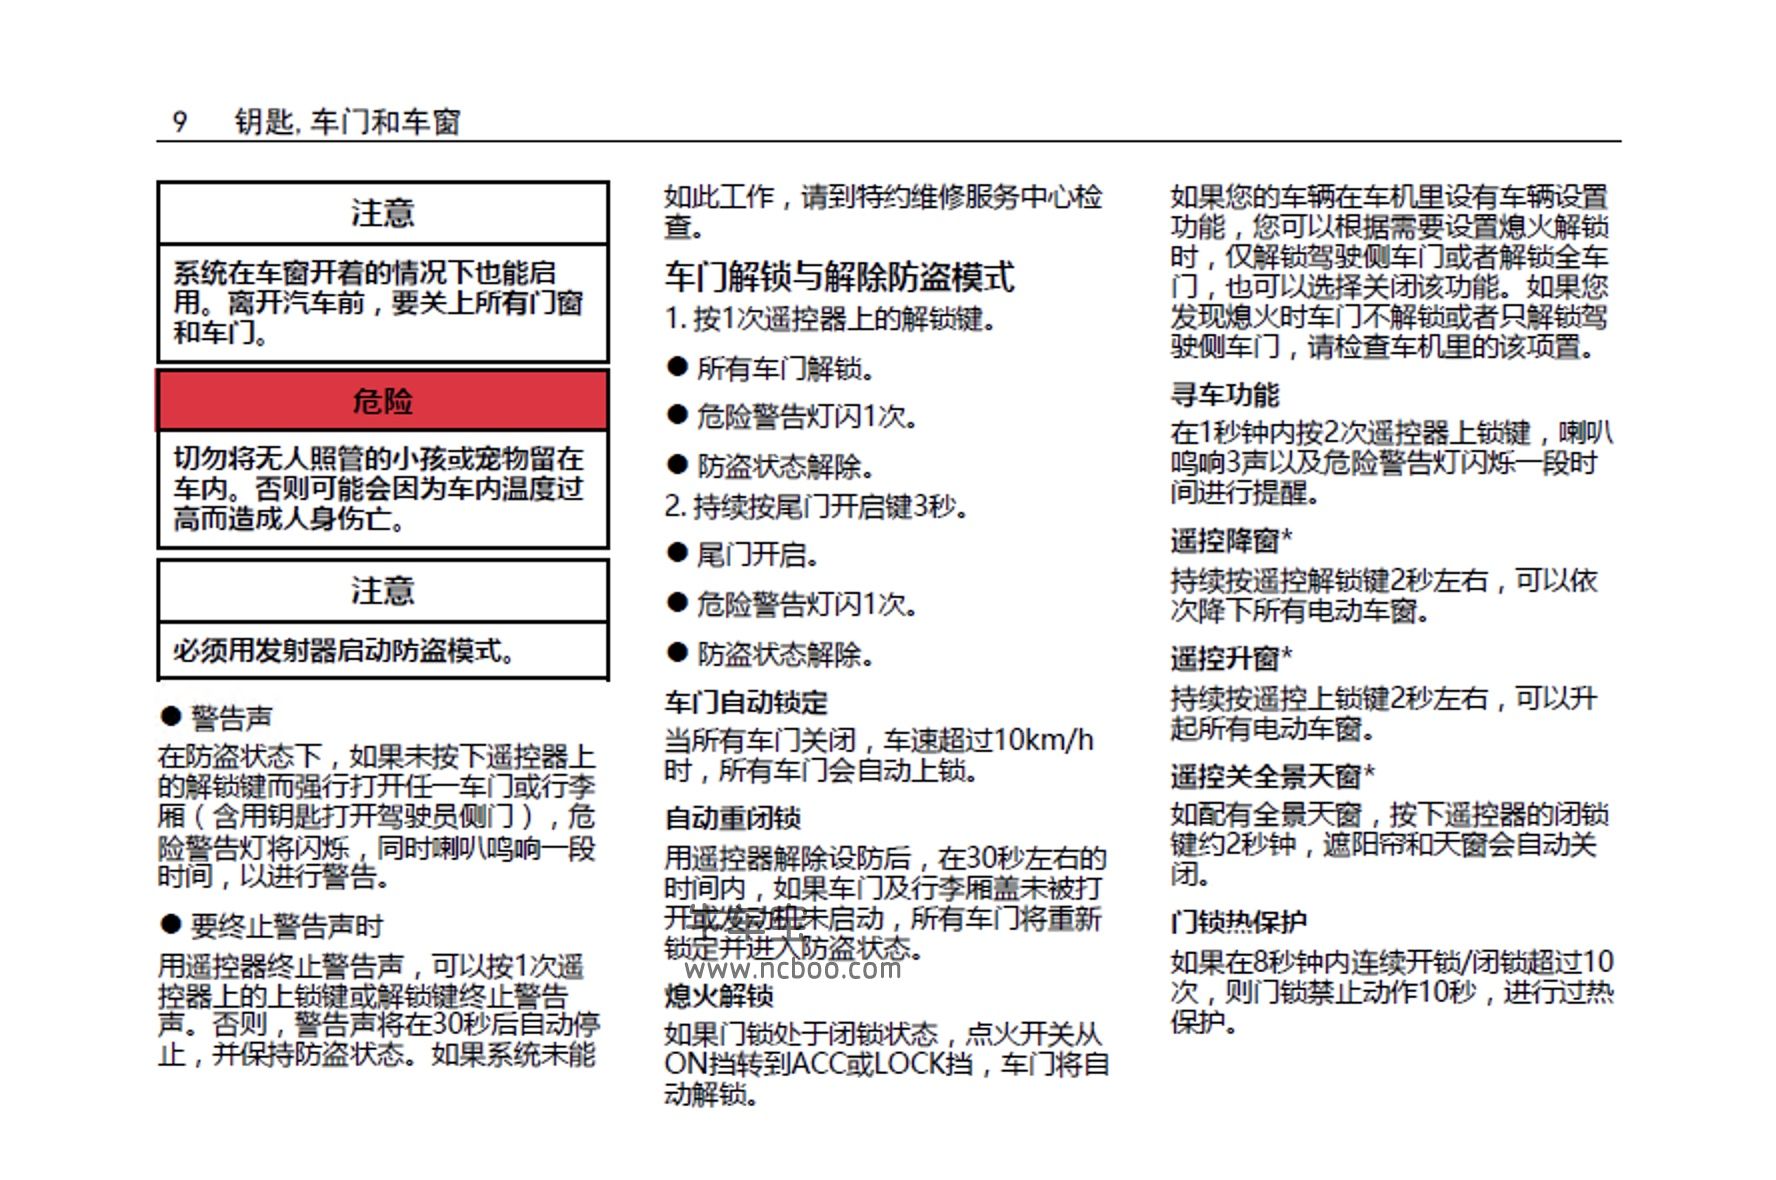 2021款新宝骏RS-7产品使用说明书-用户手册PDF电子版下载